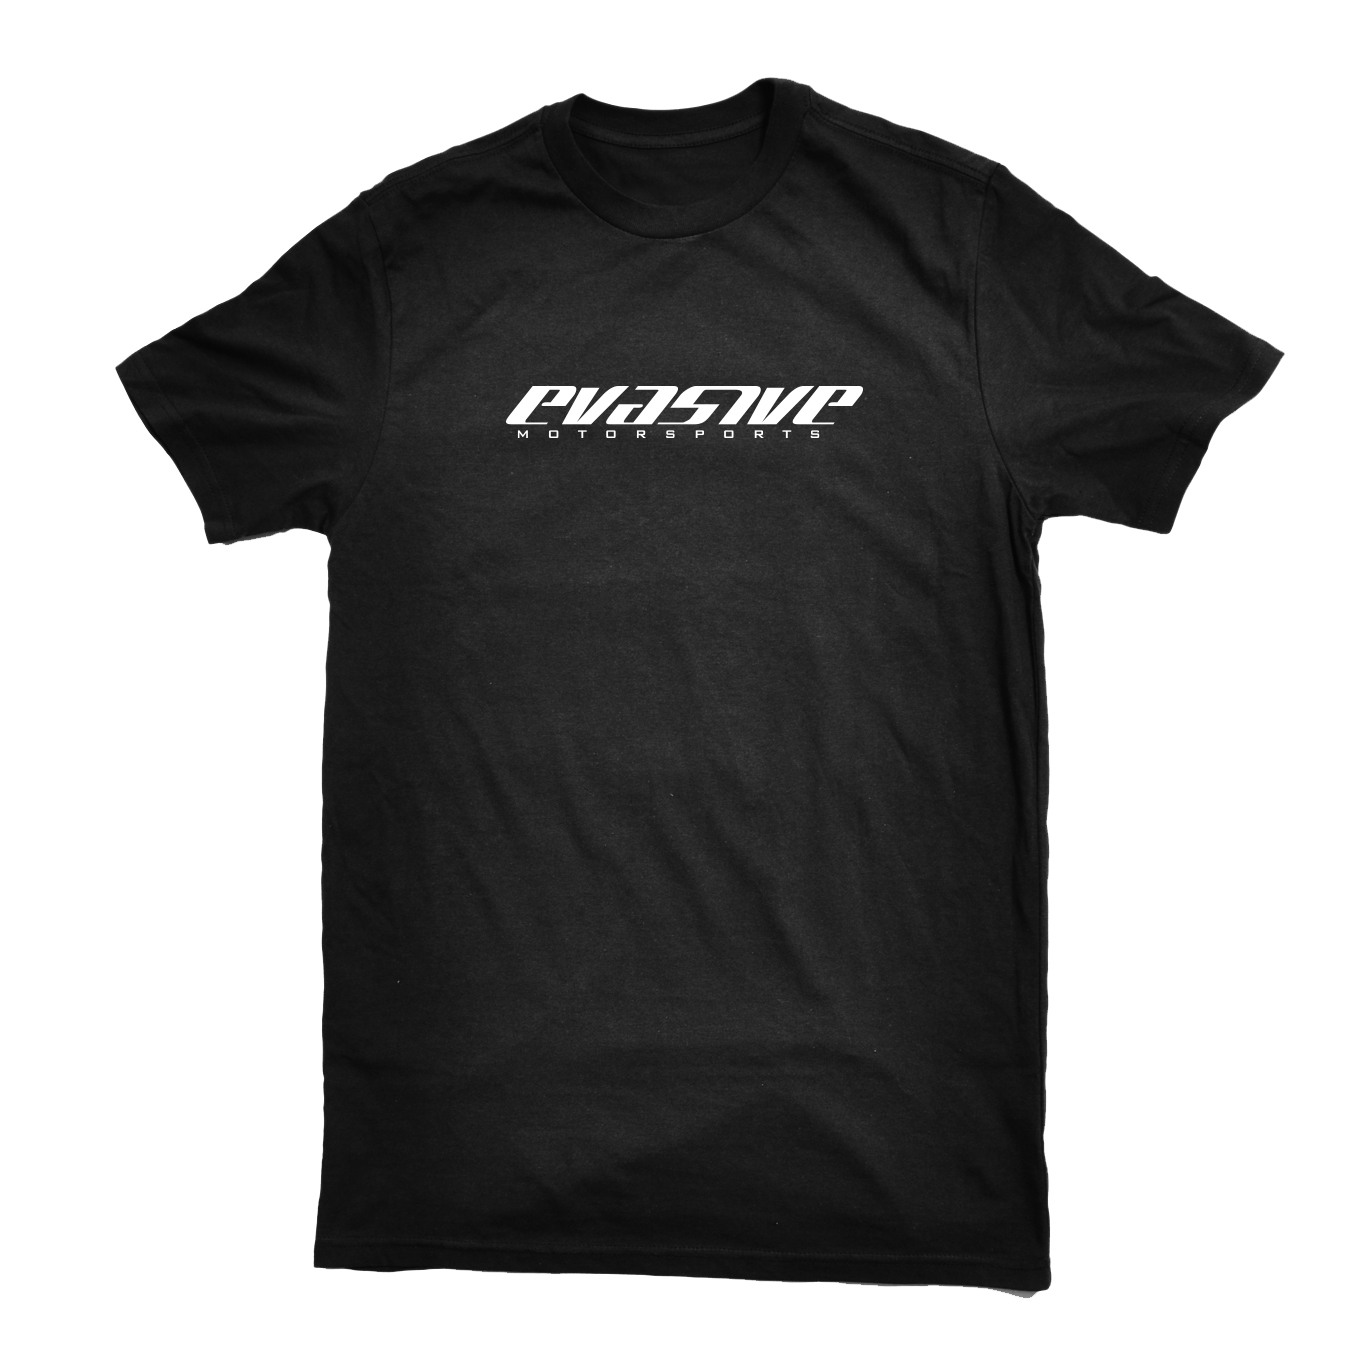 Evasive Motorsports: Voltex T-Shirt